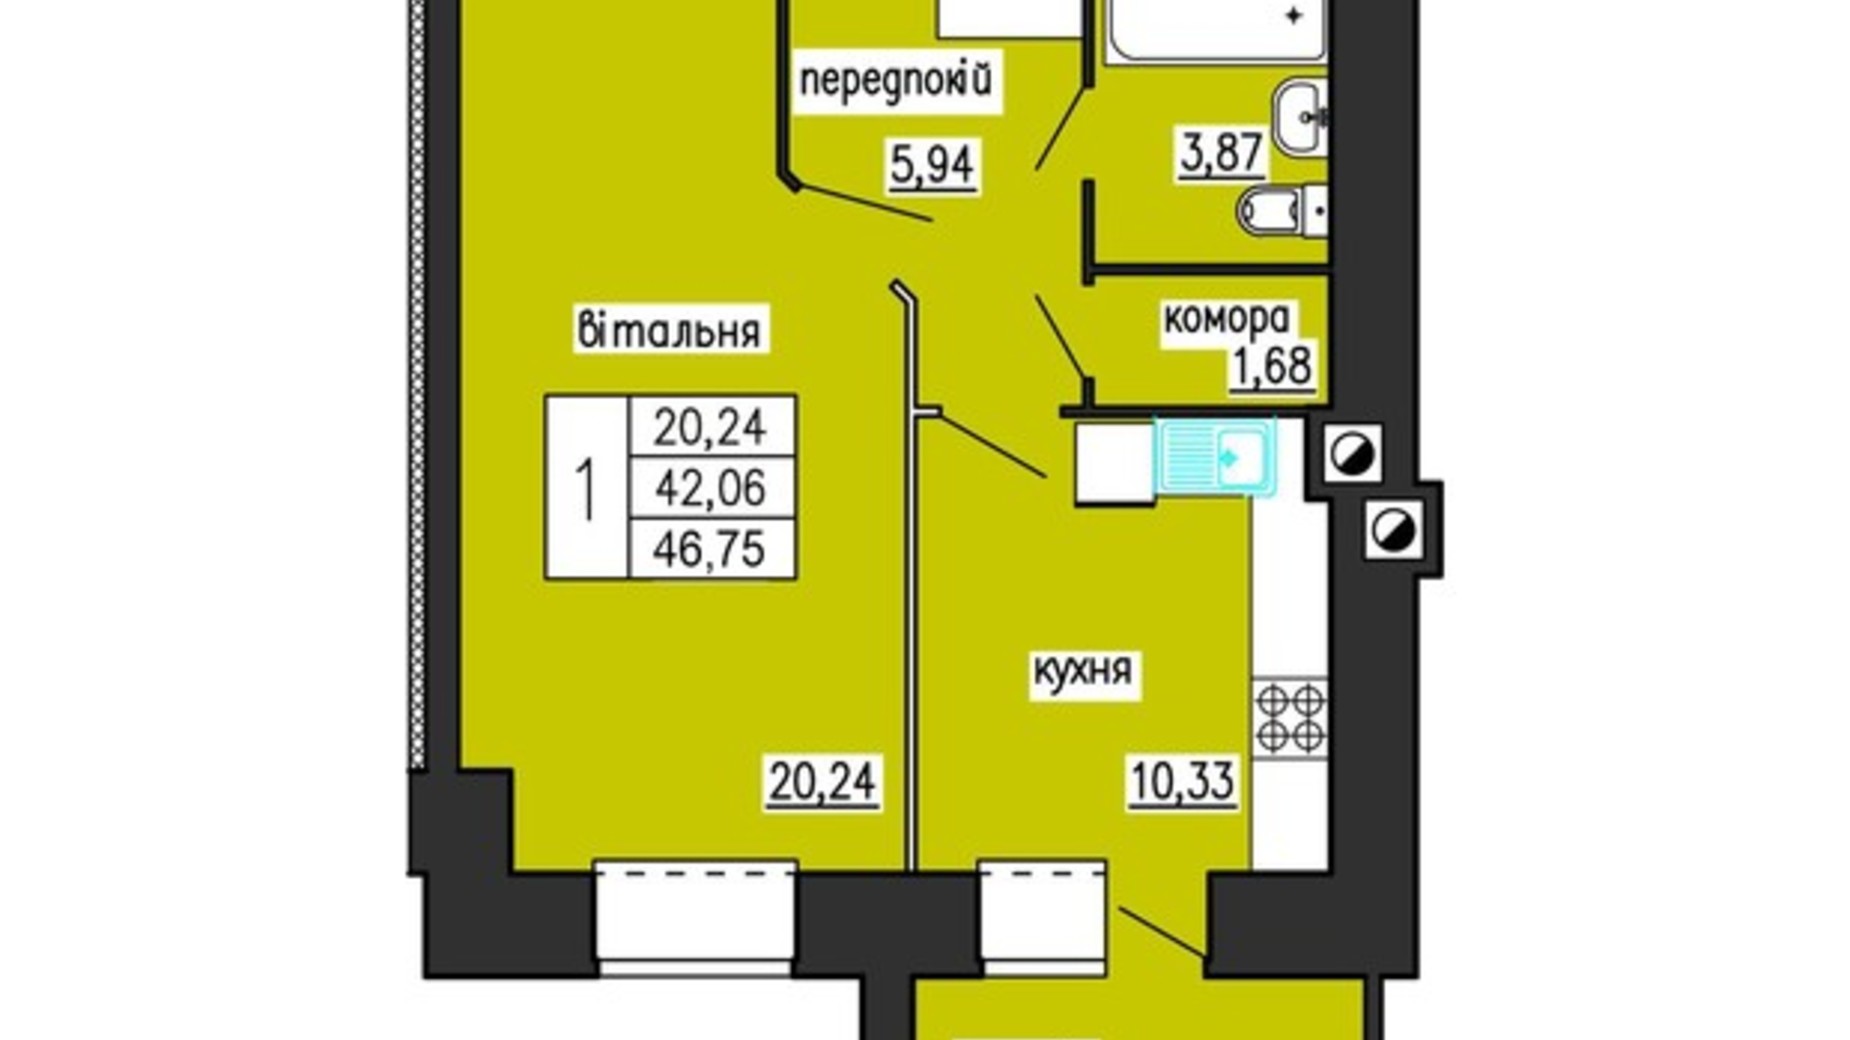 Планировка 1-комнатной квартиры в ЖК по ул. Лучаковского-Троллейбусная 46.75 м², фото 285007